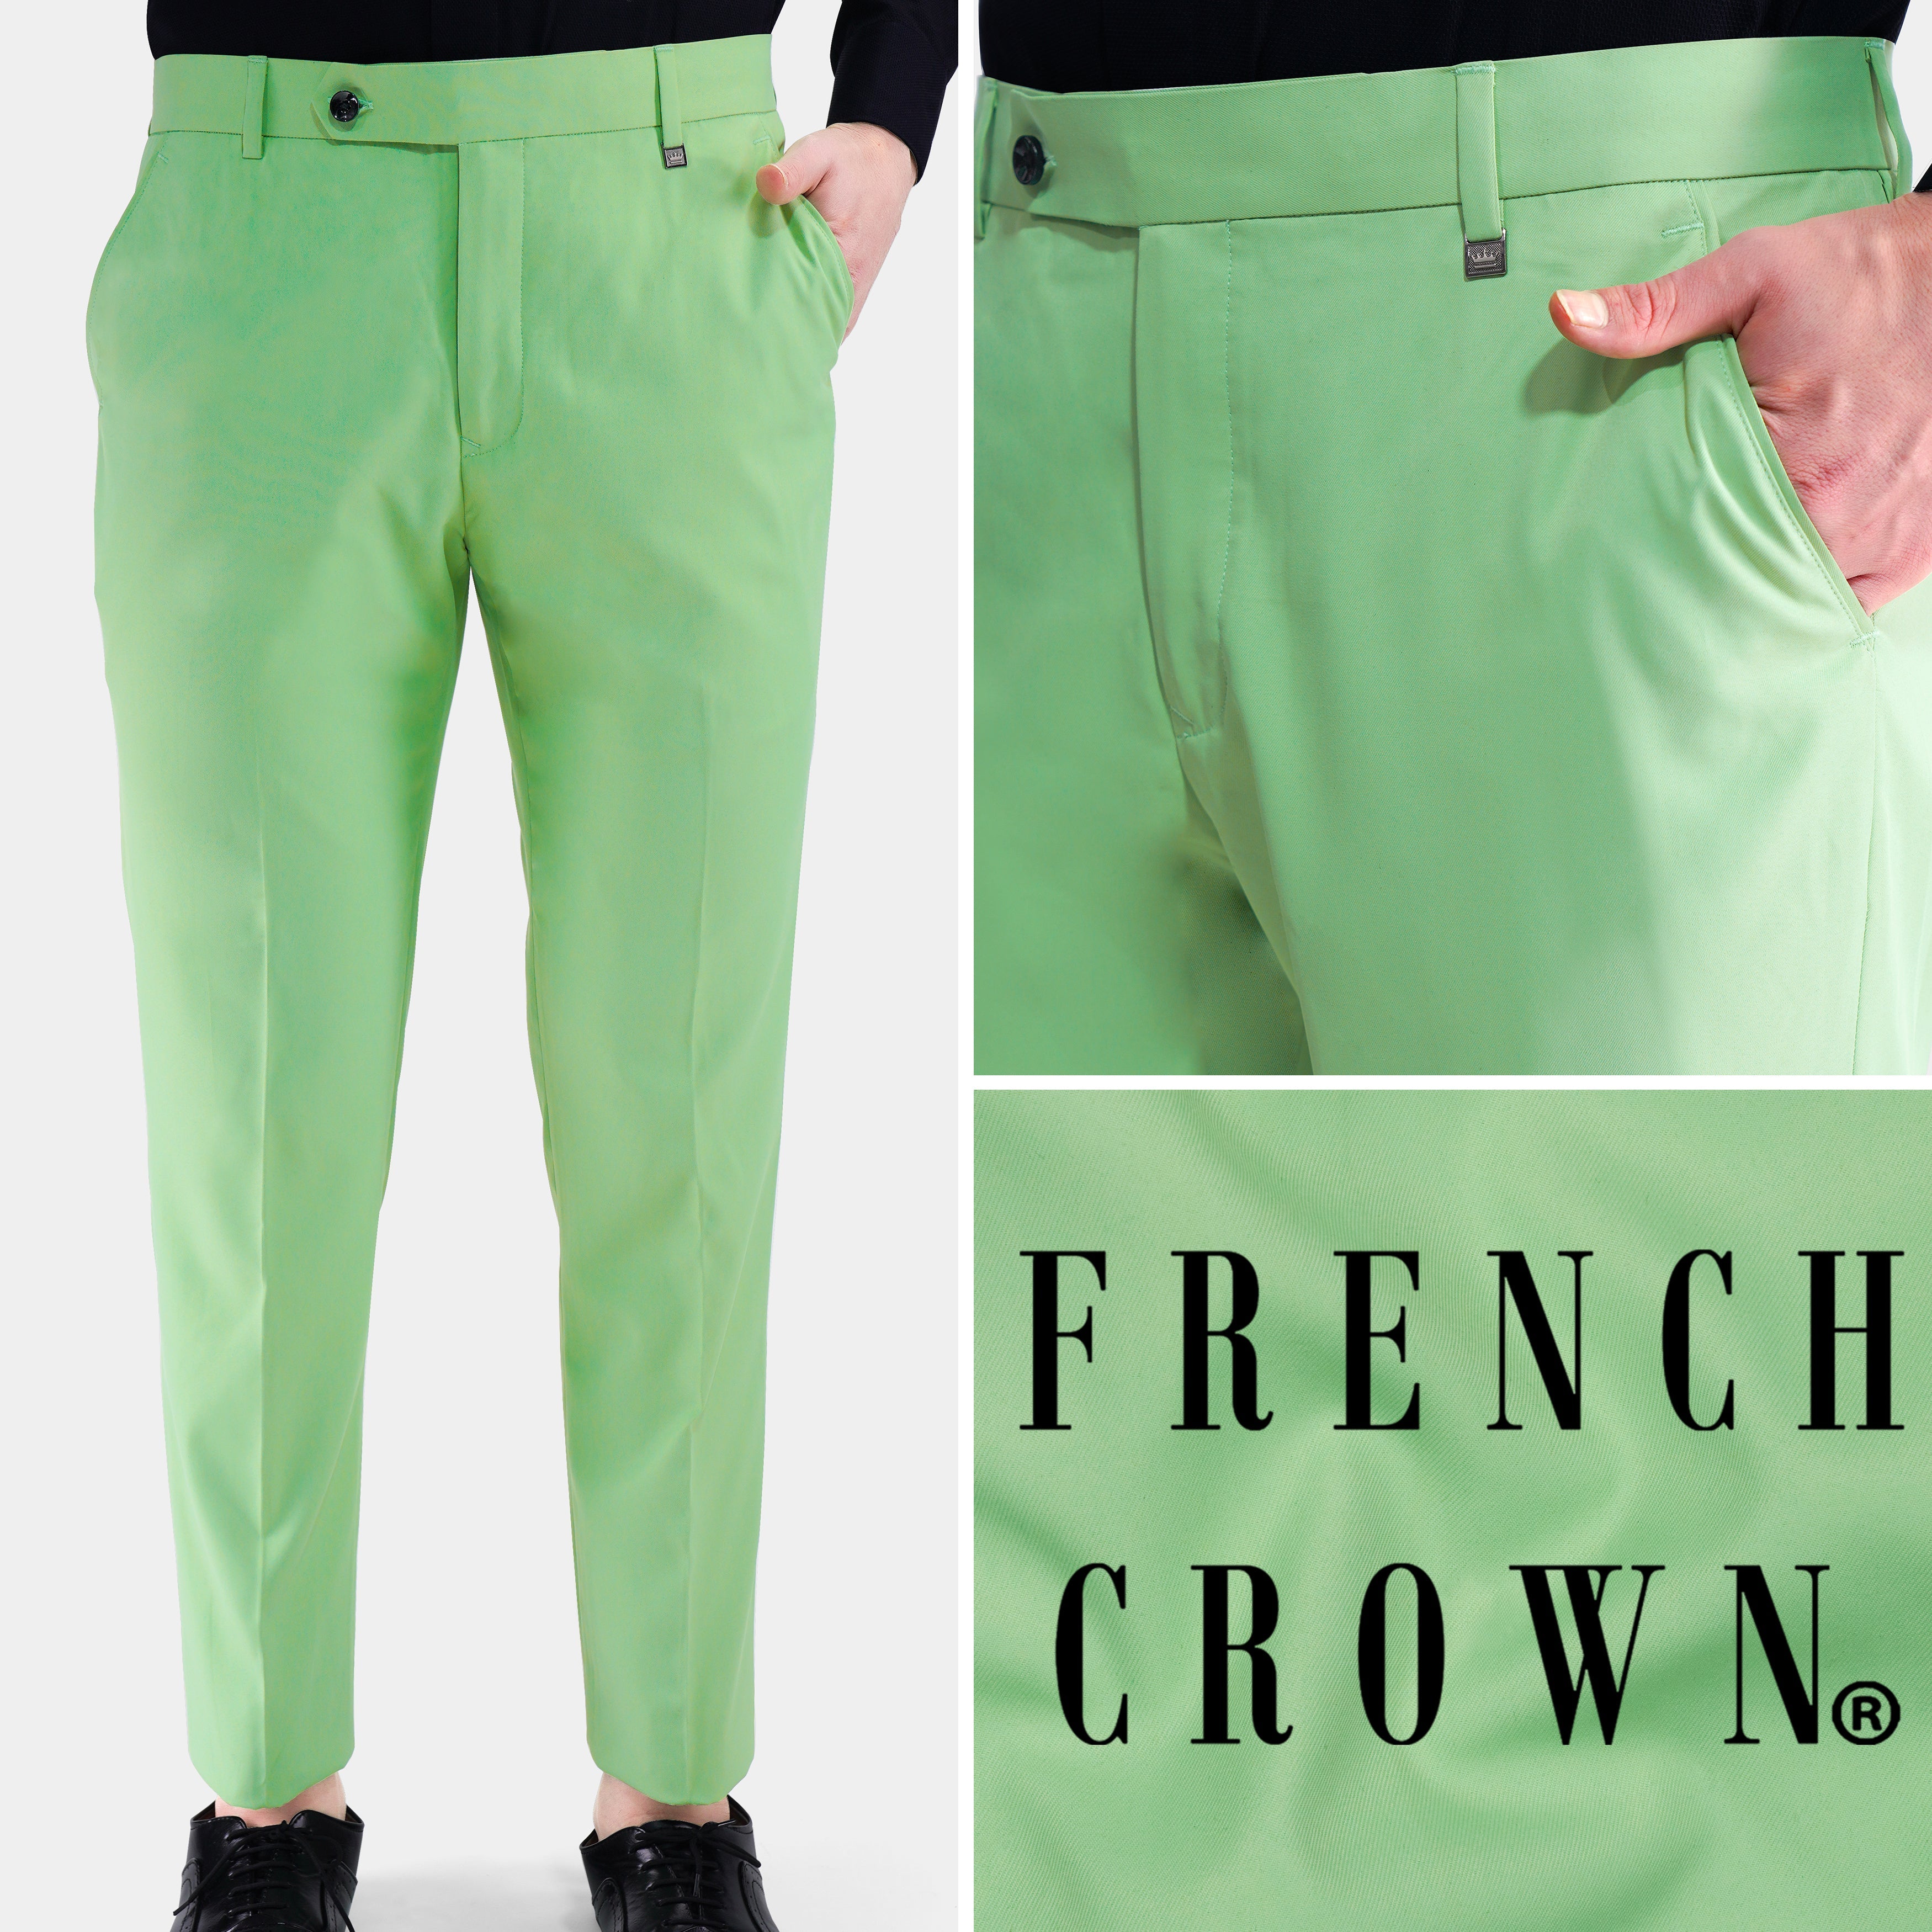 Men's Light Green Formal Trousers